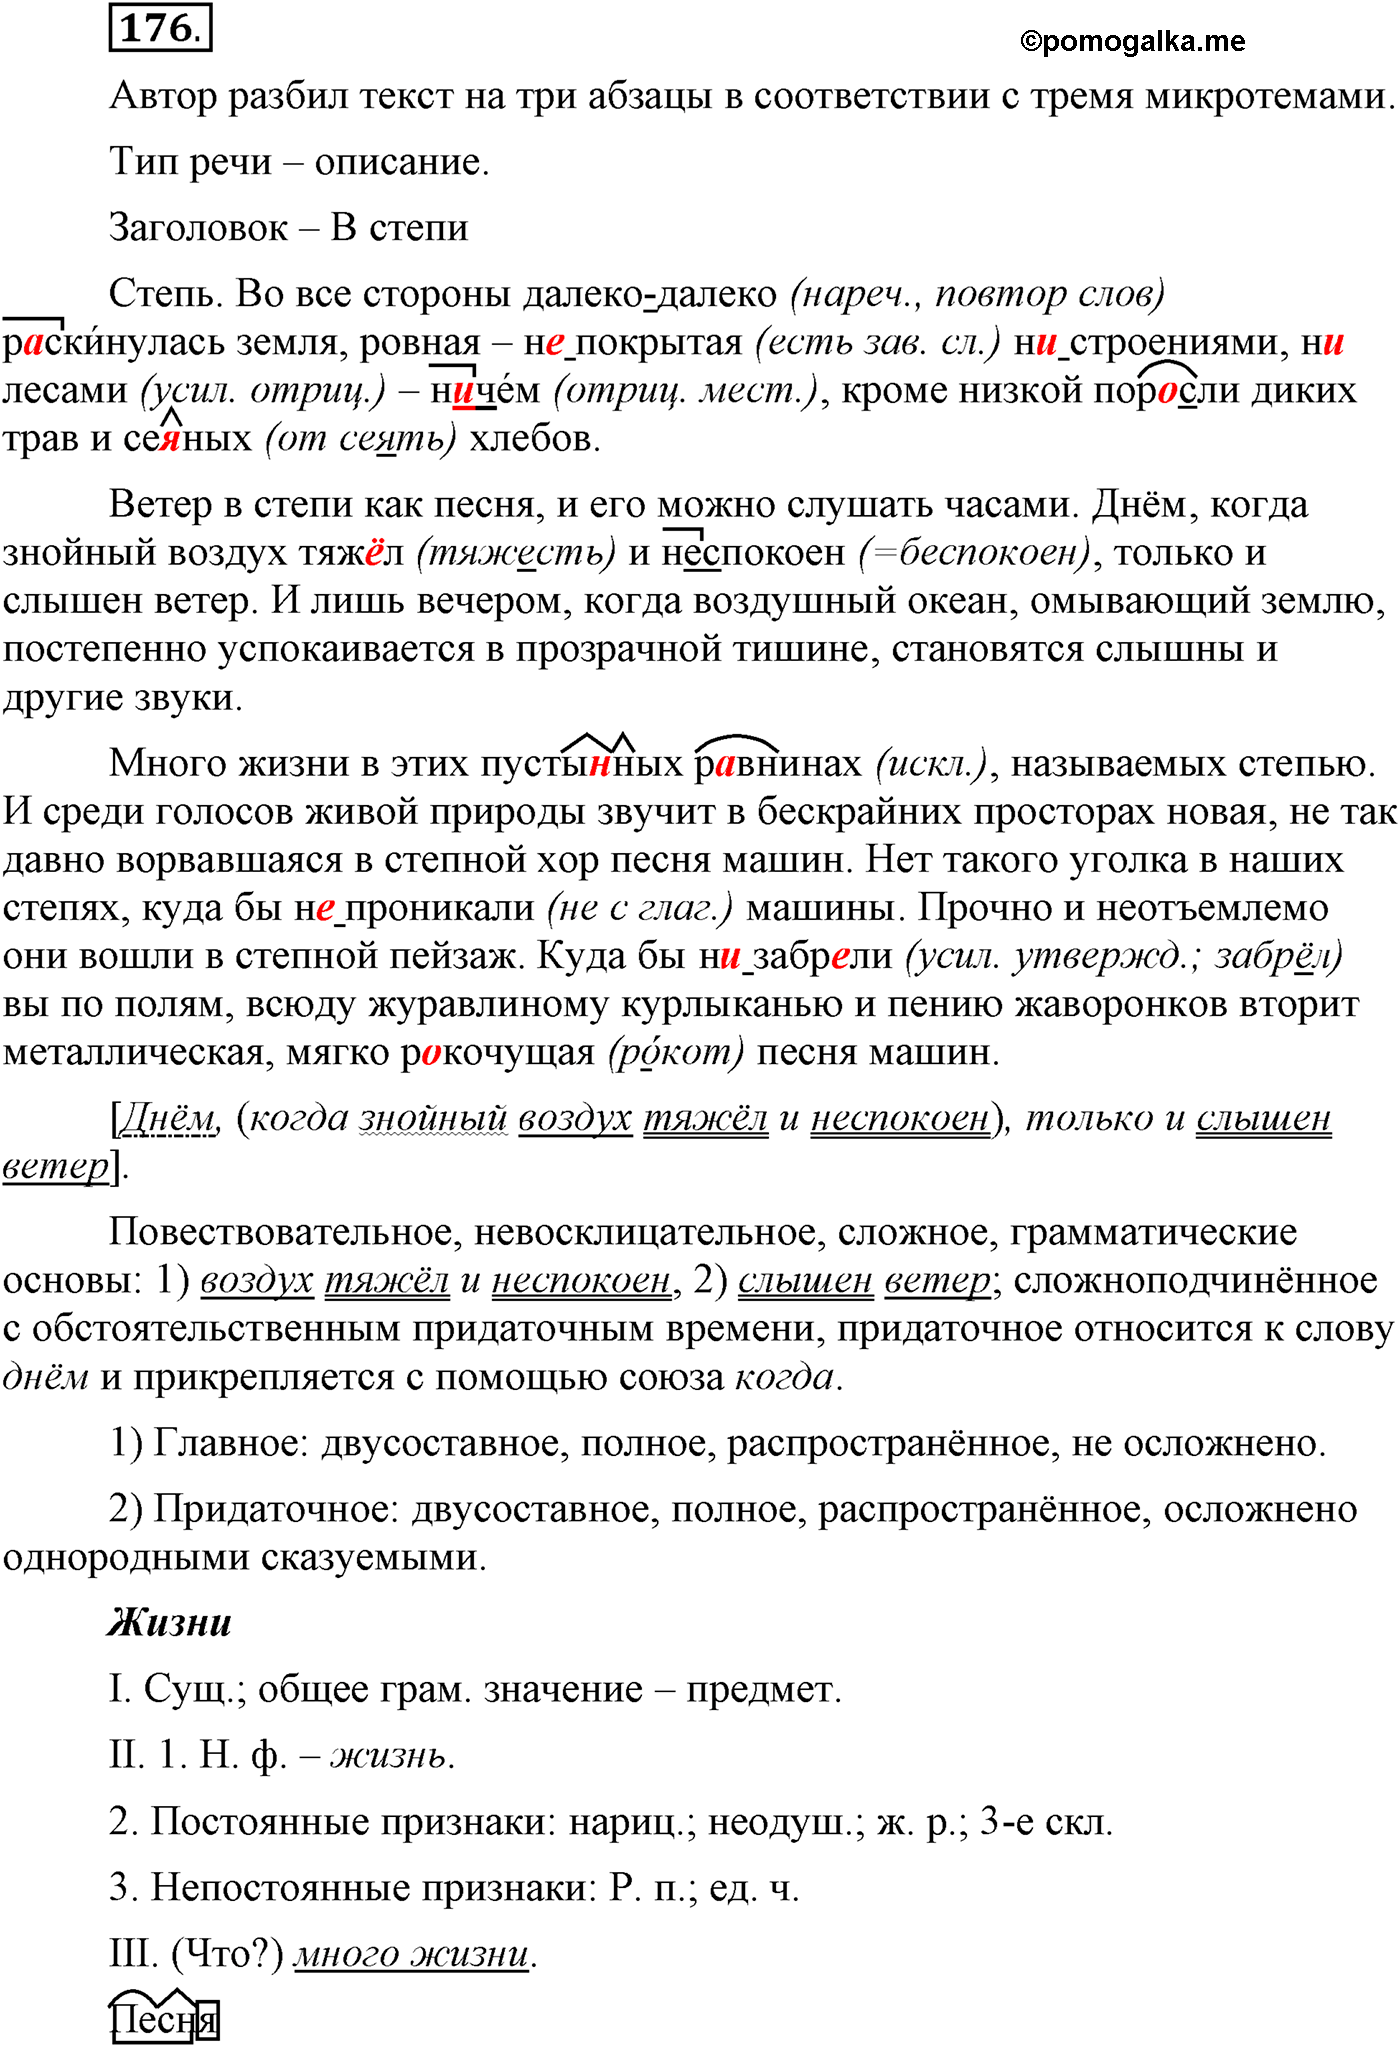 Русский язык 7 класс упр 176.